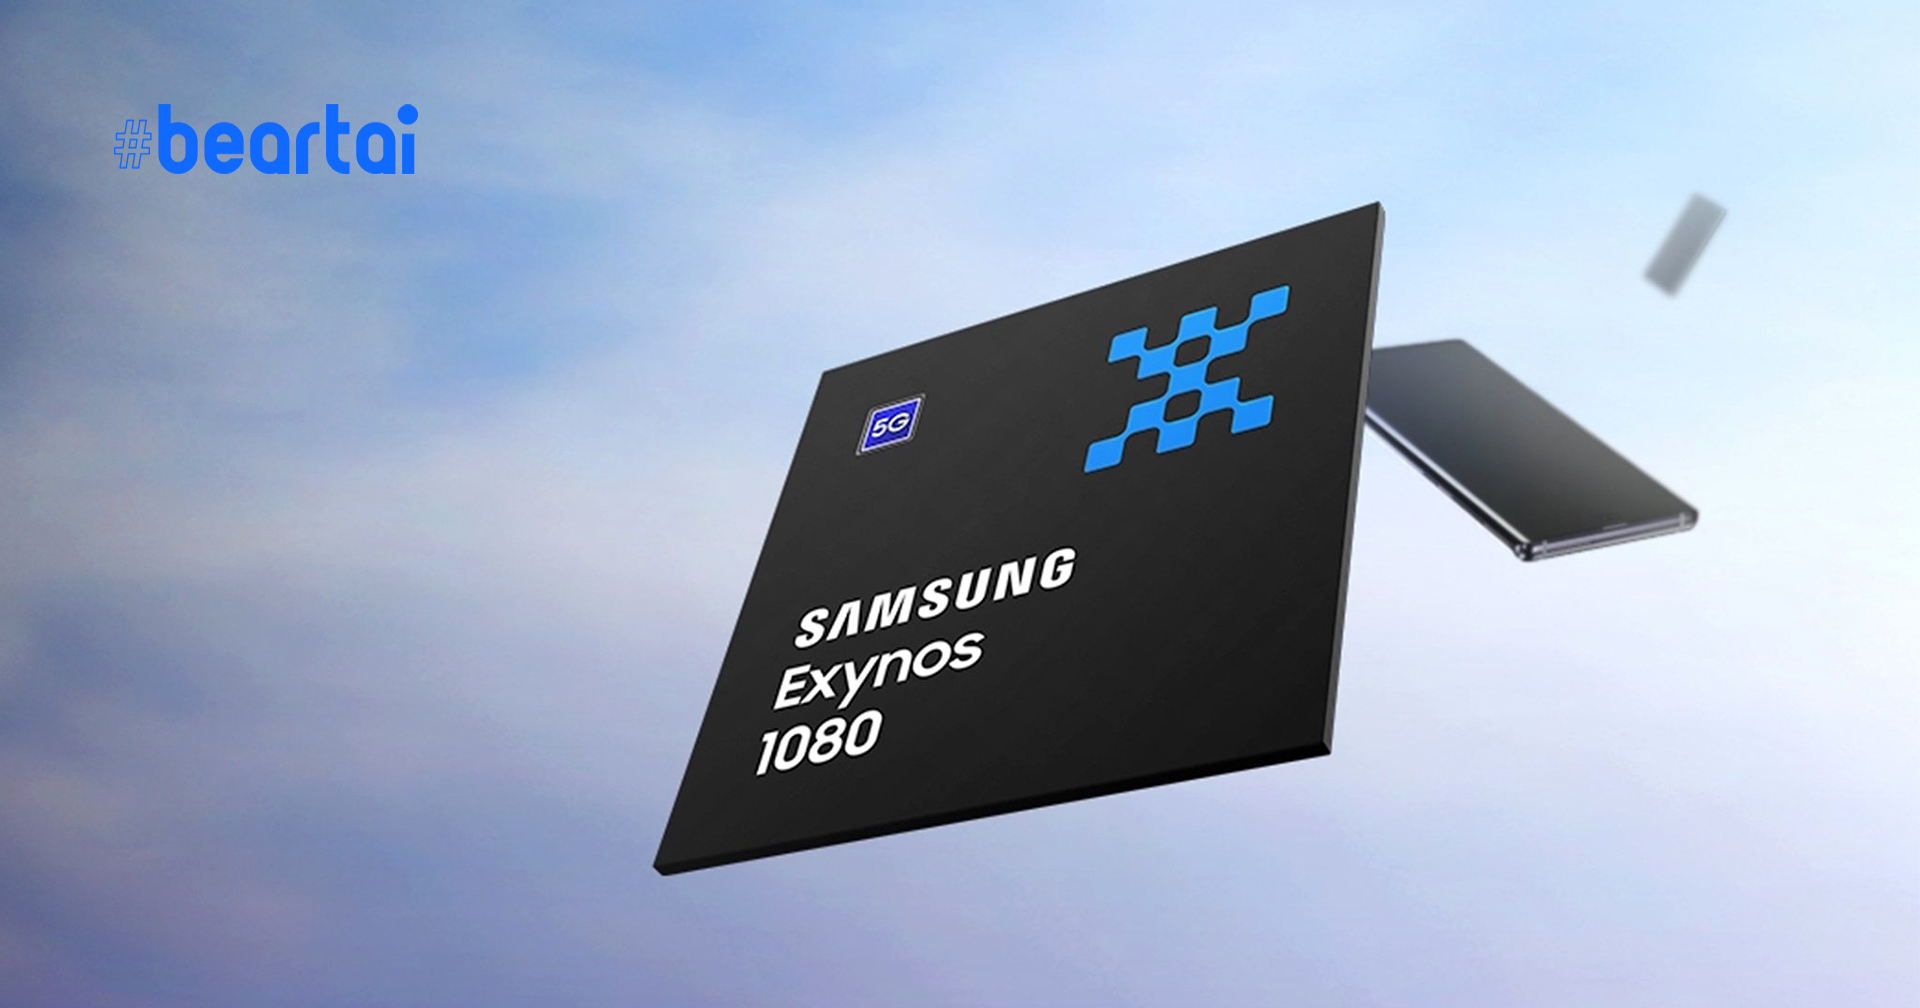 Samsung เปิดตัว Exynos 1080 : ชิประดับ 5 นาโนเมตร ตัวแรกของ Samsung